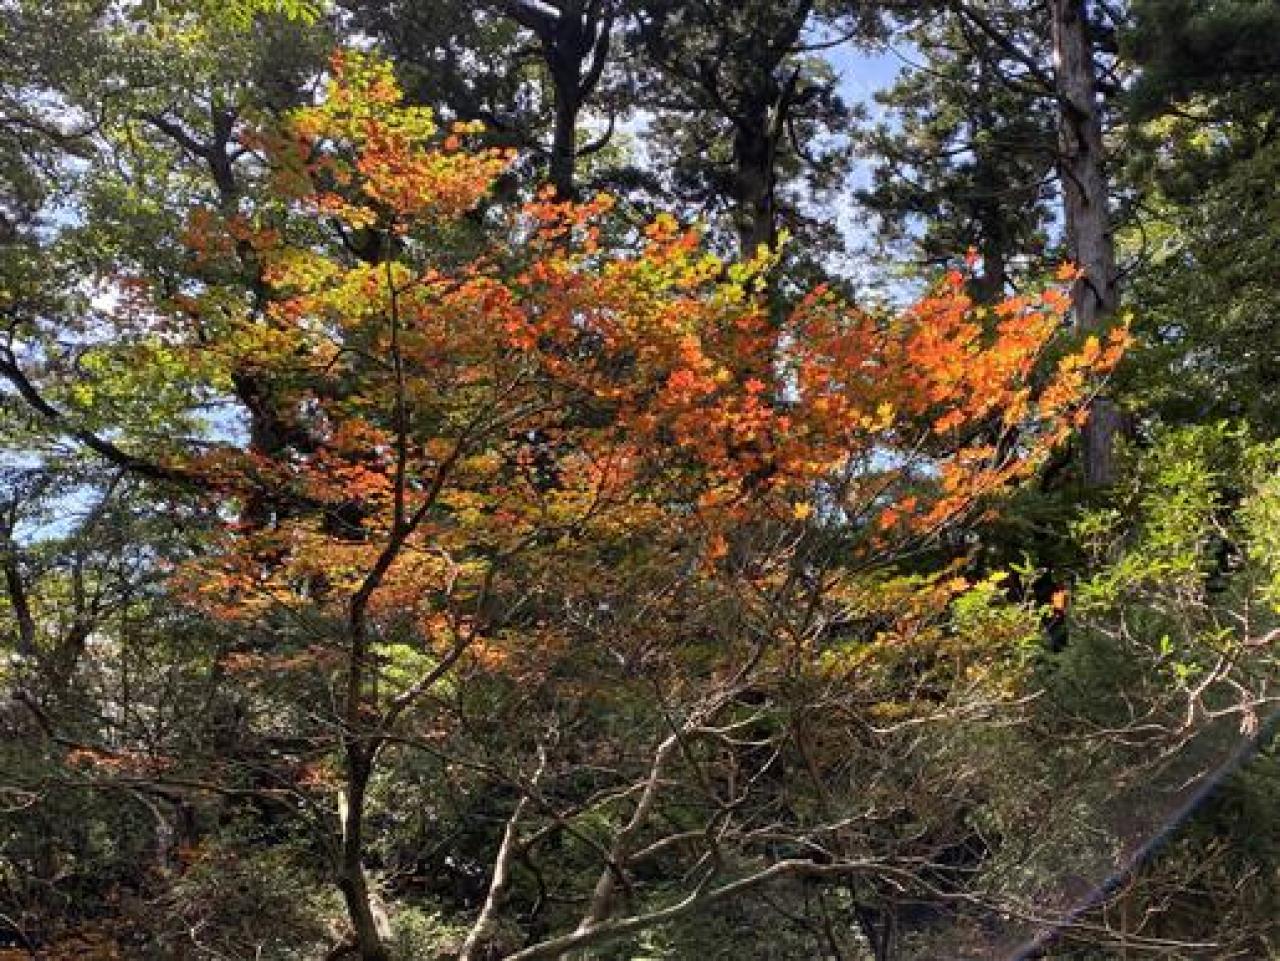 縄文杉コースでは、コハウチワカエデの葉が色付き始め。標高1000mを超えたあたりから見られる秋のヤクスギ林を彩る落葉樹です。